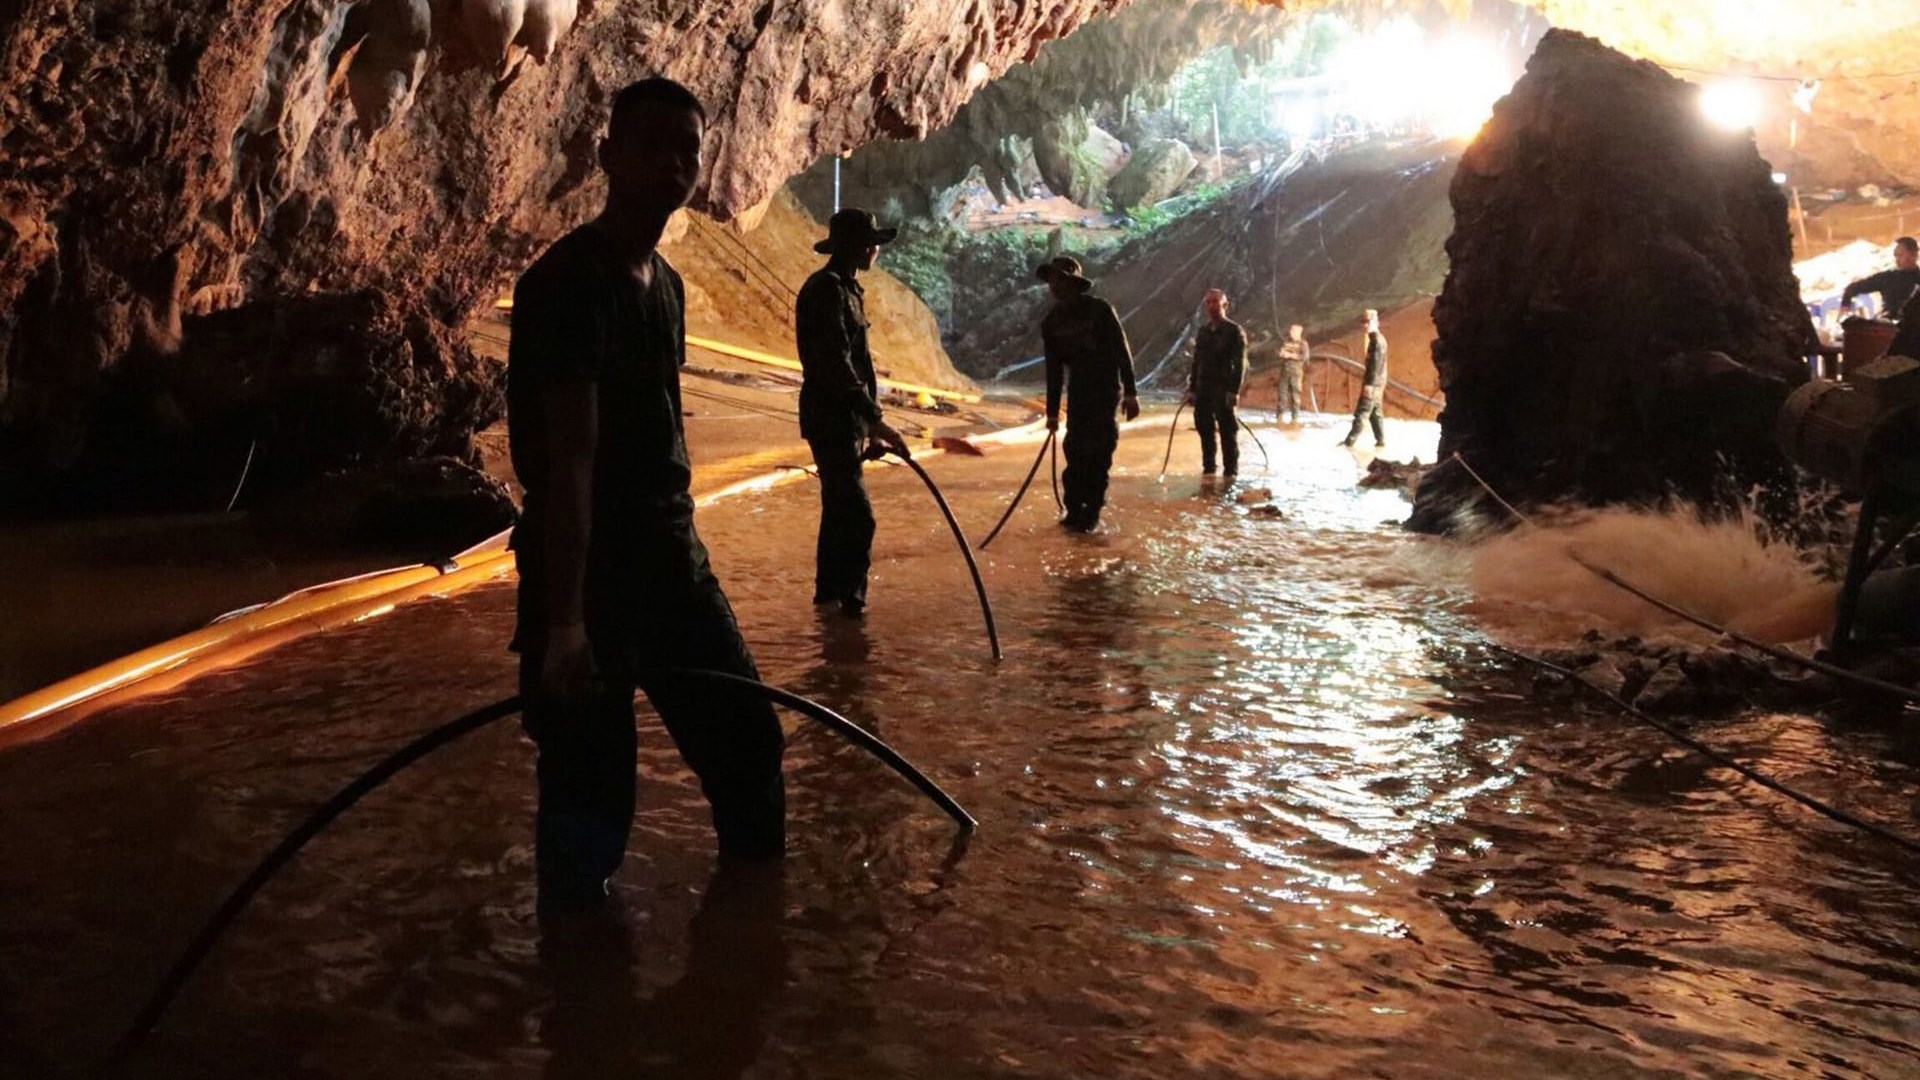 Πλημμύρισε το σπήλαιο στην Ταϊλάνδη μόλις βγήκε το τελευταίο παιδί – Τι αποκάλυψαν δύτες που συμμετείχαν στην επιχείρηση